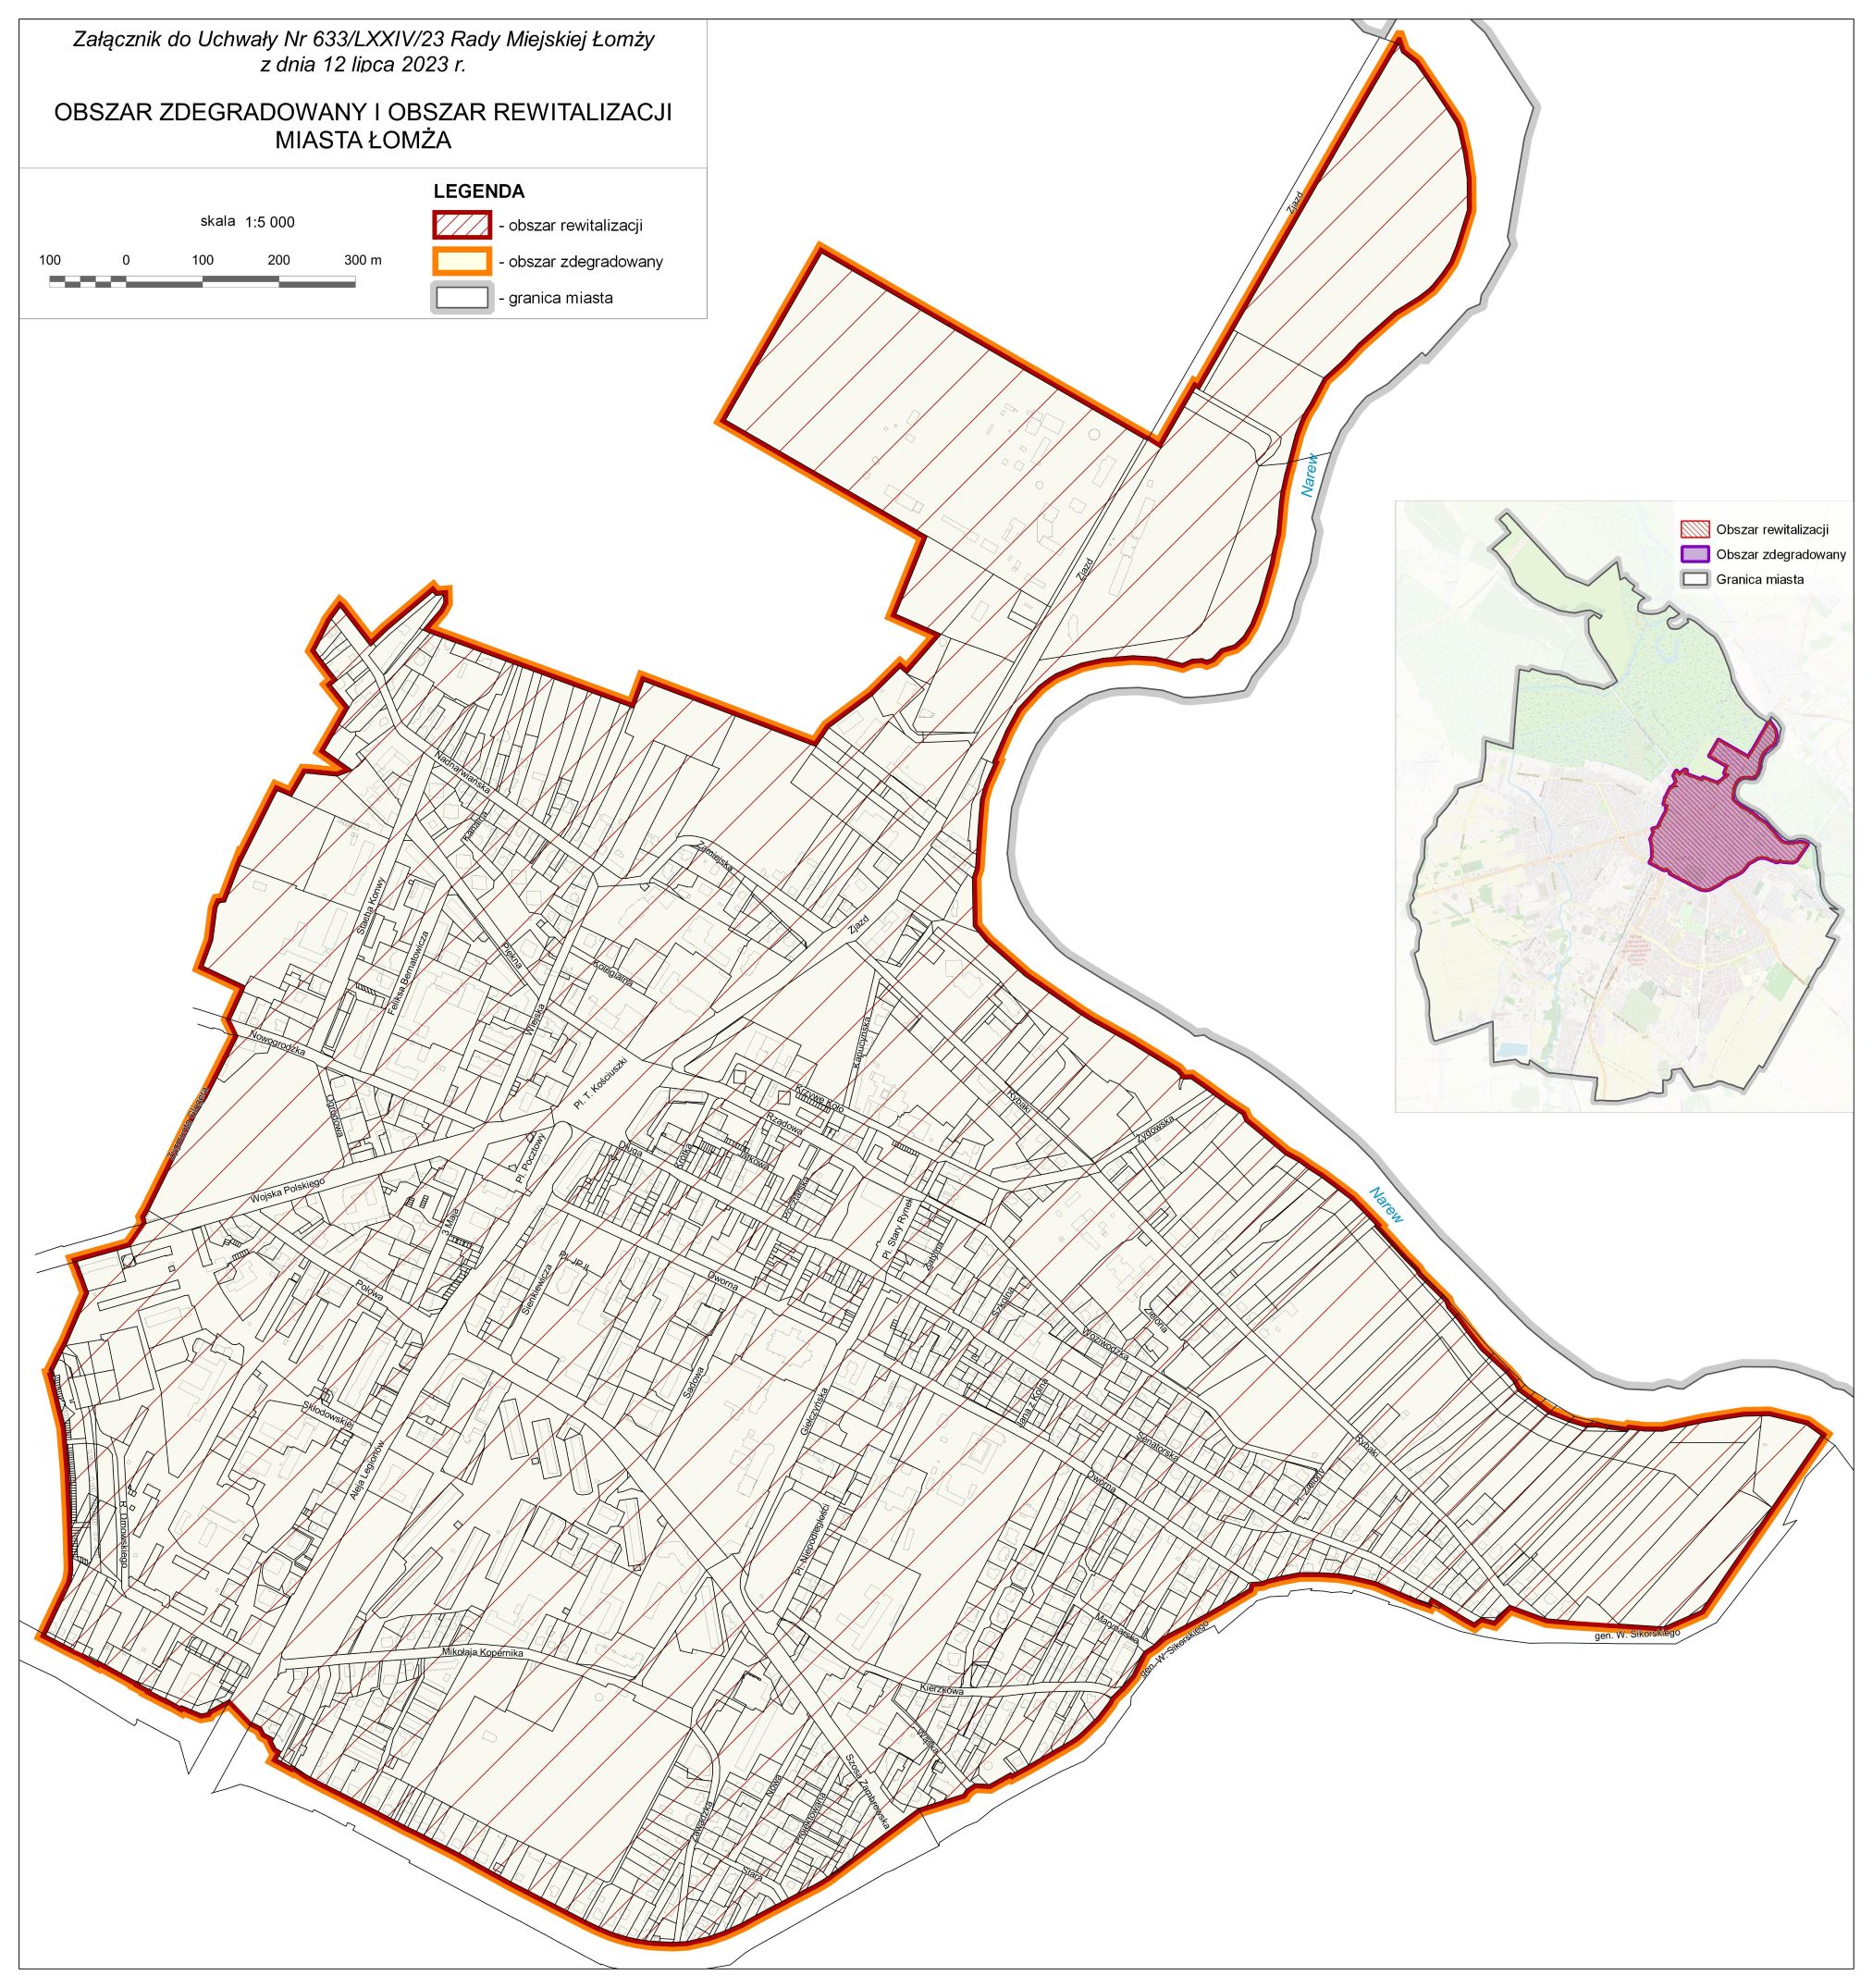 Mapa przedstawiająca obszar zdegradowany i obszar rewitalizacji Miasta Łomża